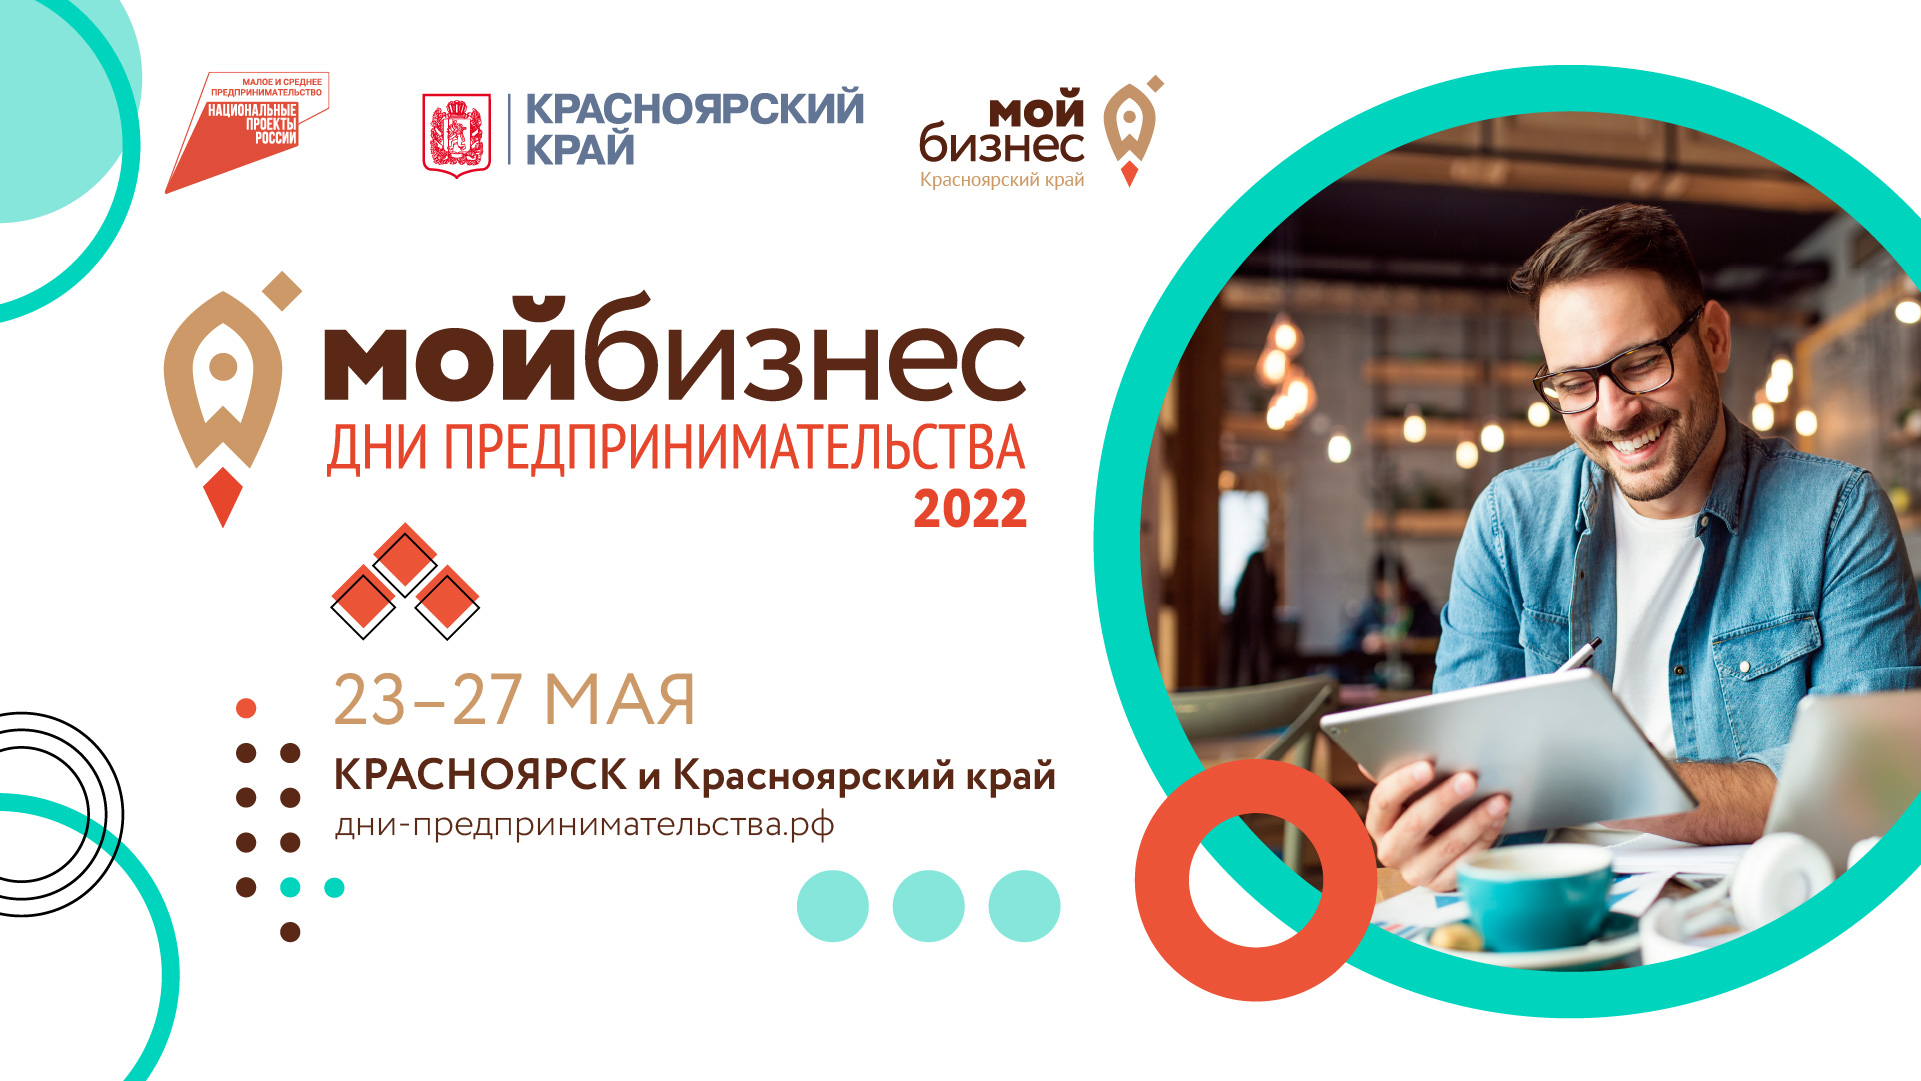 Дни предпринимательства-2022: в Красноярском крае проведут более 60 бесплатных мероприятий для бизнеса